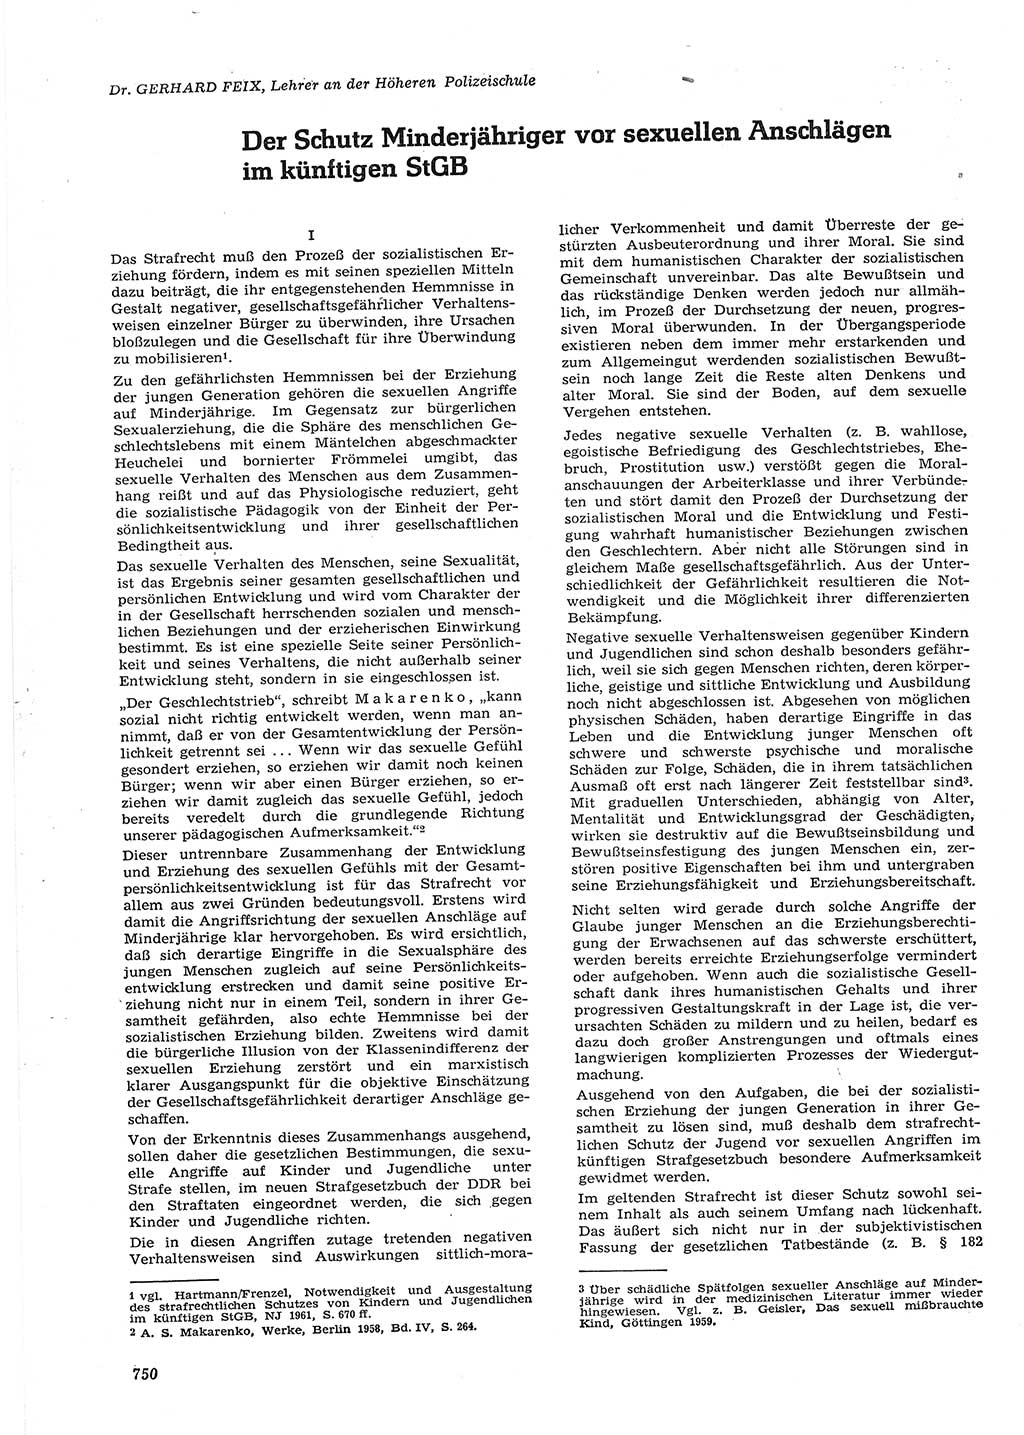 Neue Justiz (NJ), Zeitschrift für Recht und Rechtswissenschaft [Deutsche Demokratische Republik (DDR)], 15. Jahrgang 1961, Seite 750 (NJ DDR 1961, S. 750)